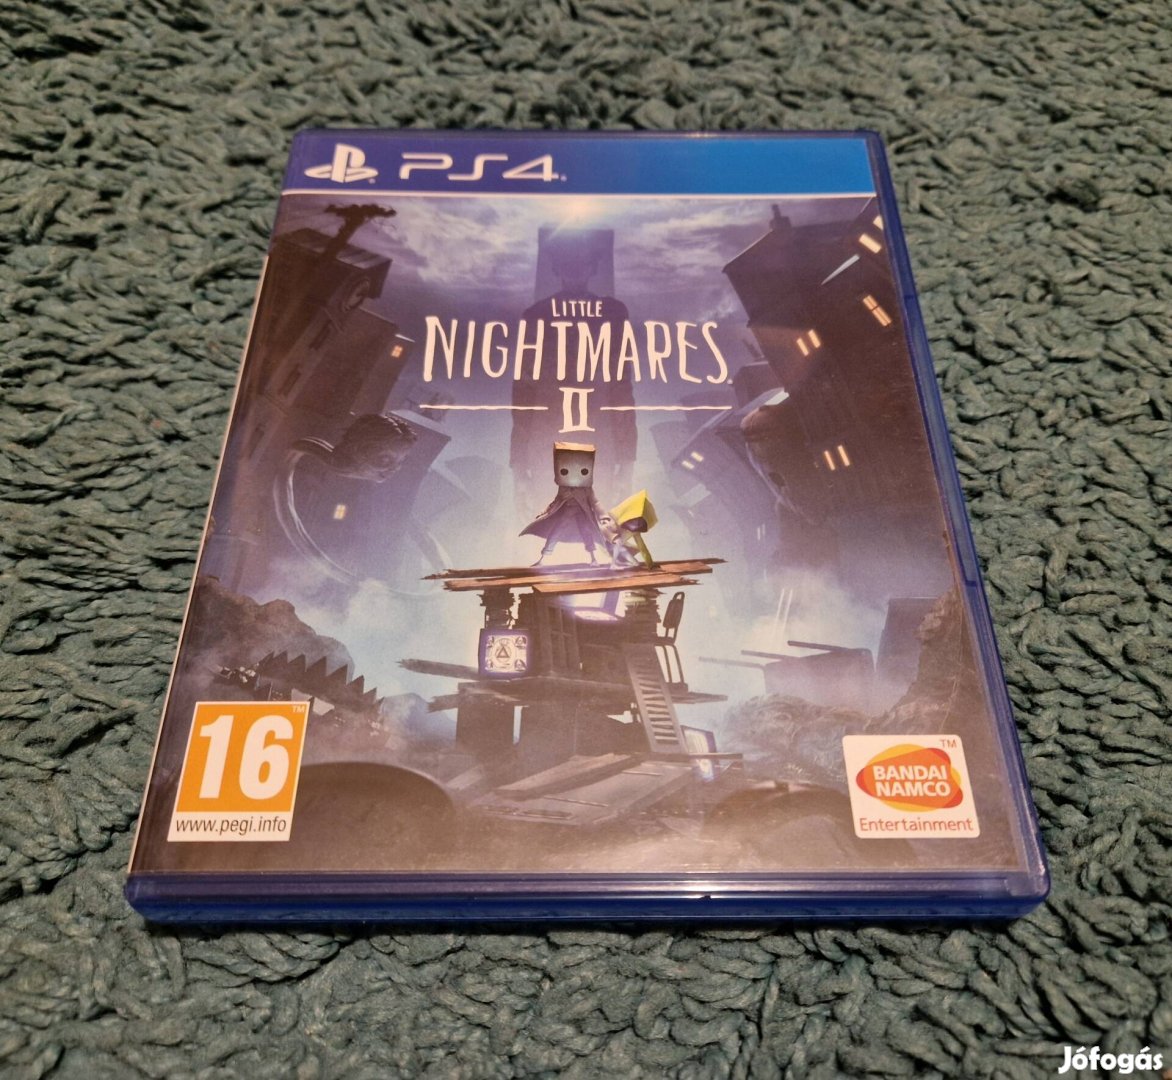 Little Nightmare 2 PS4